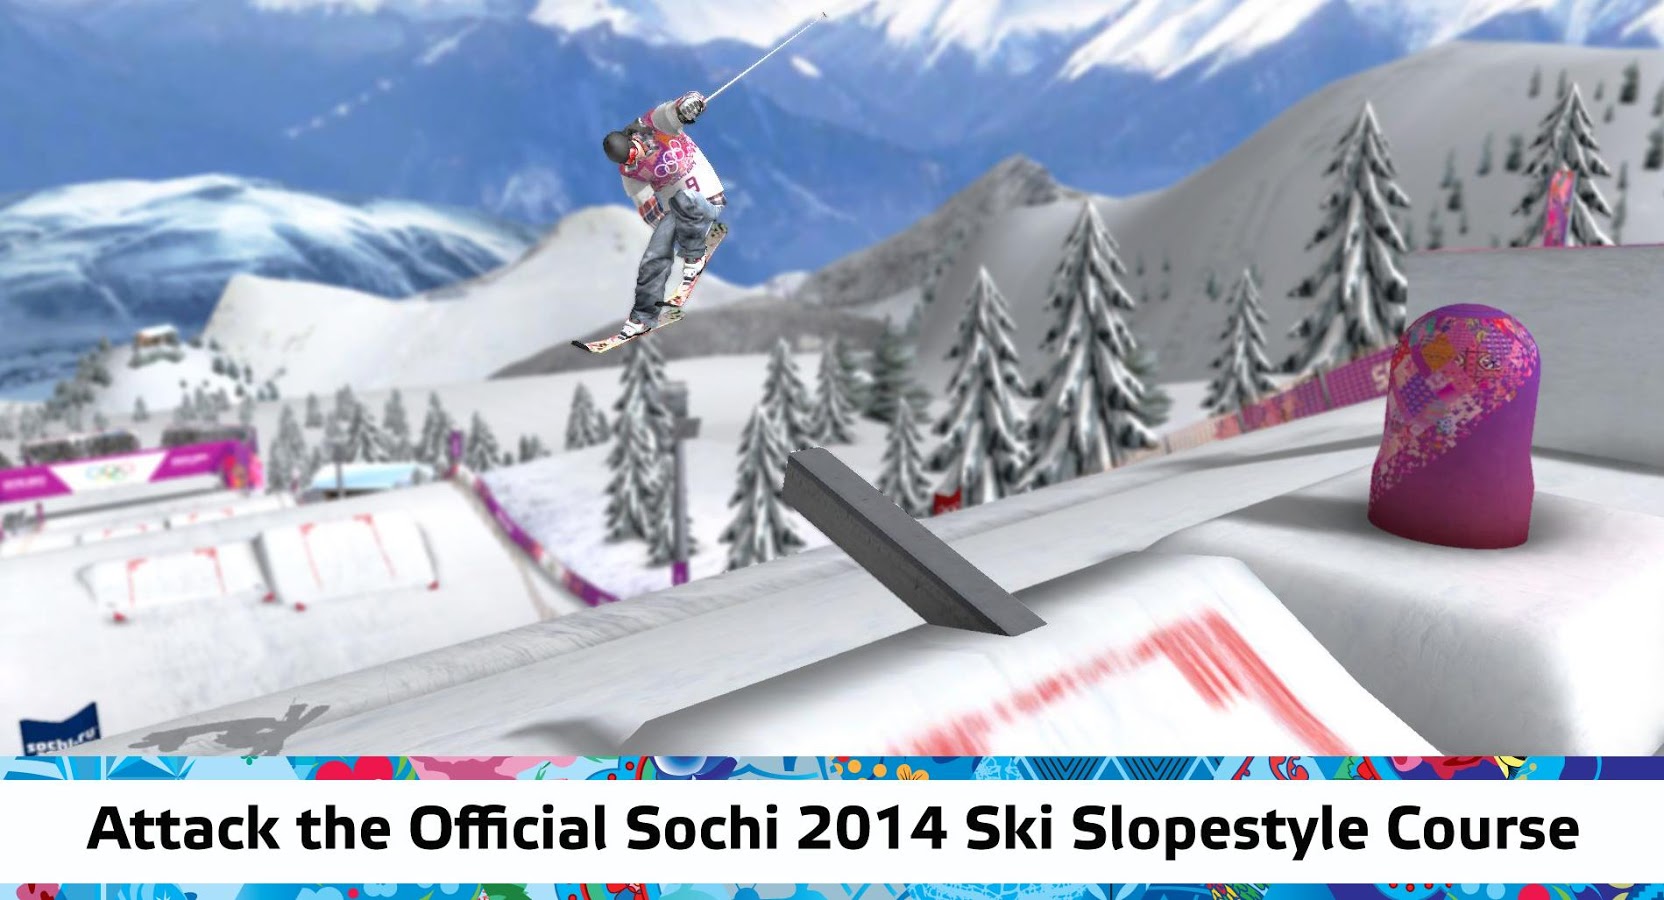 索契冬奥会2014:花样滑雪